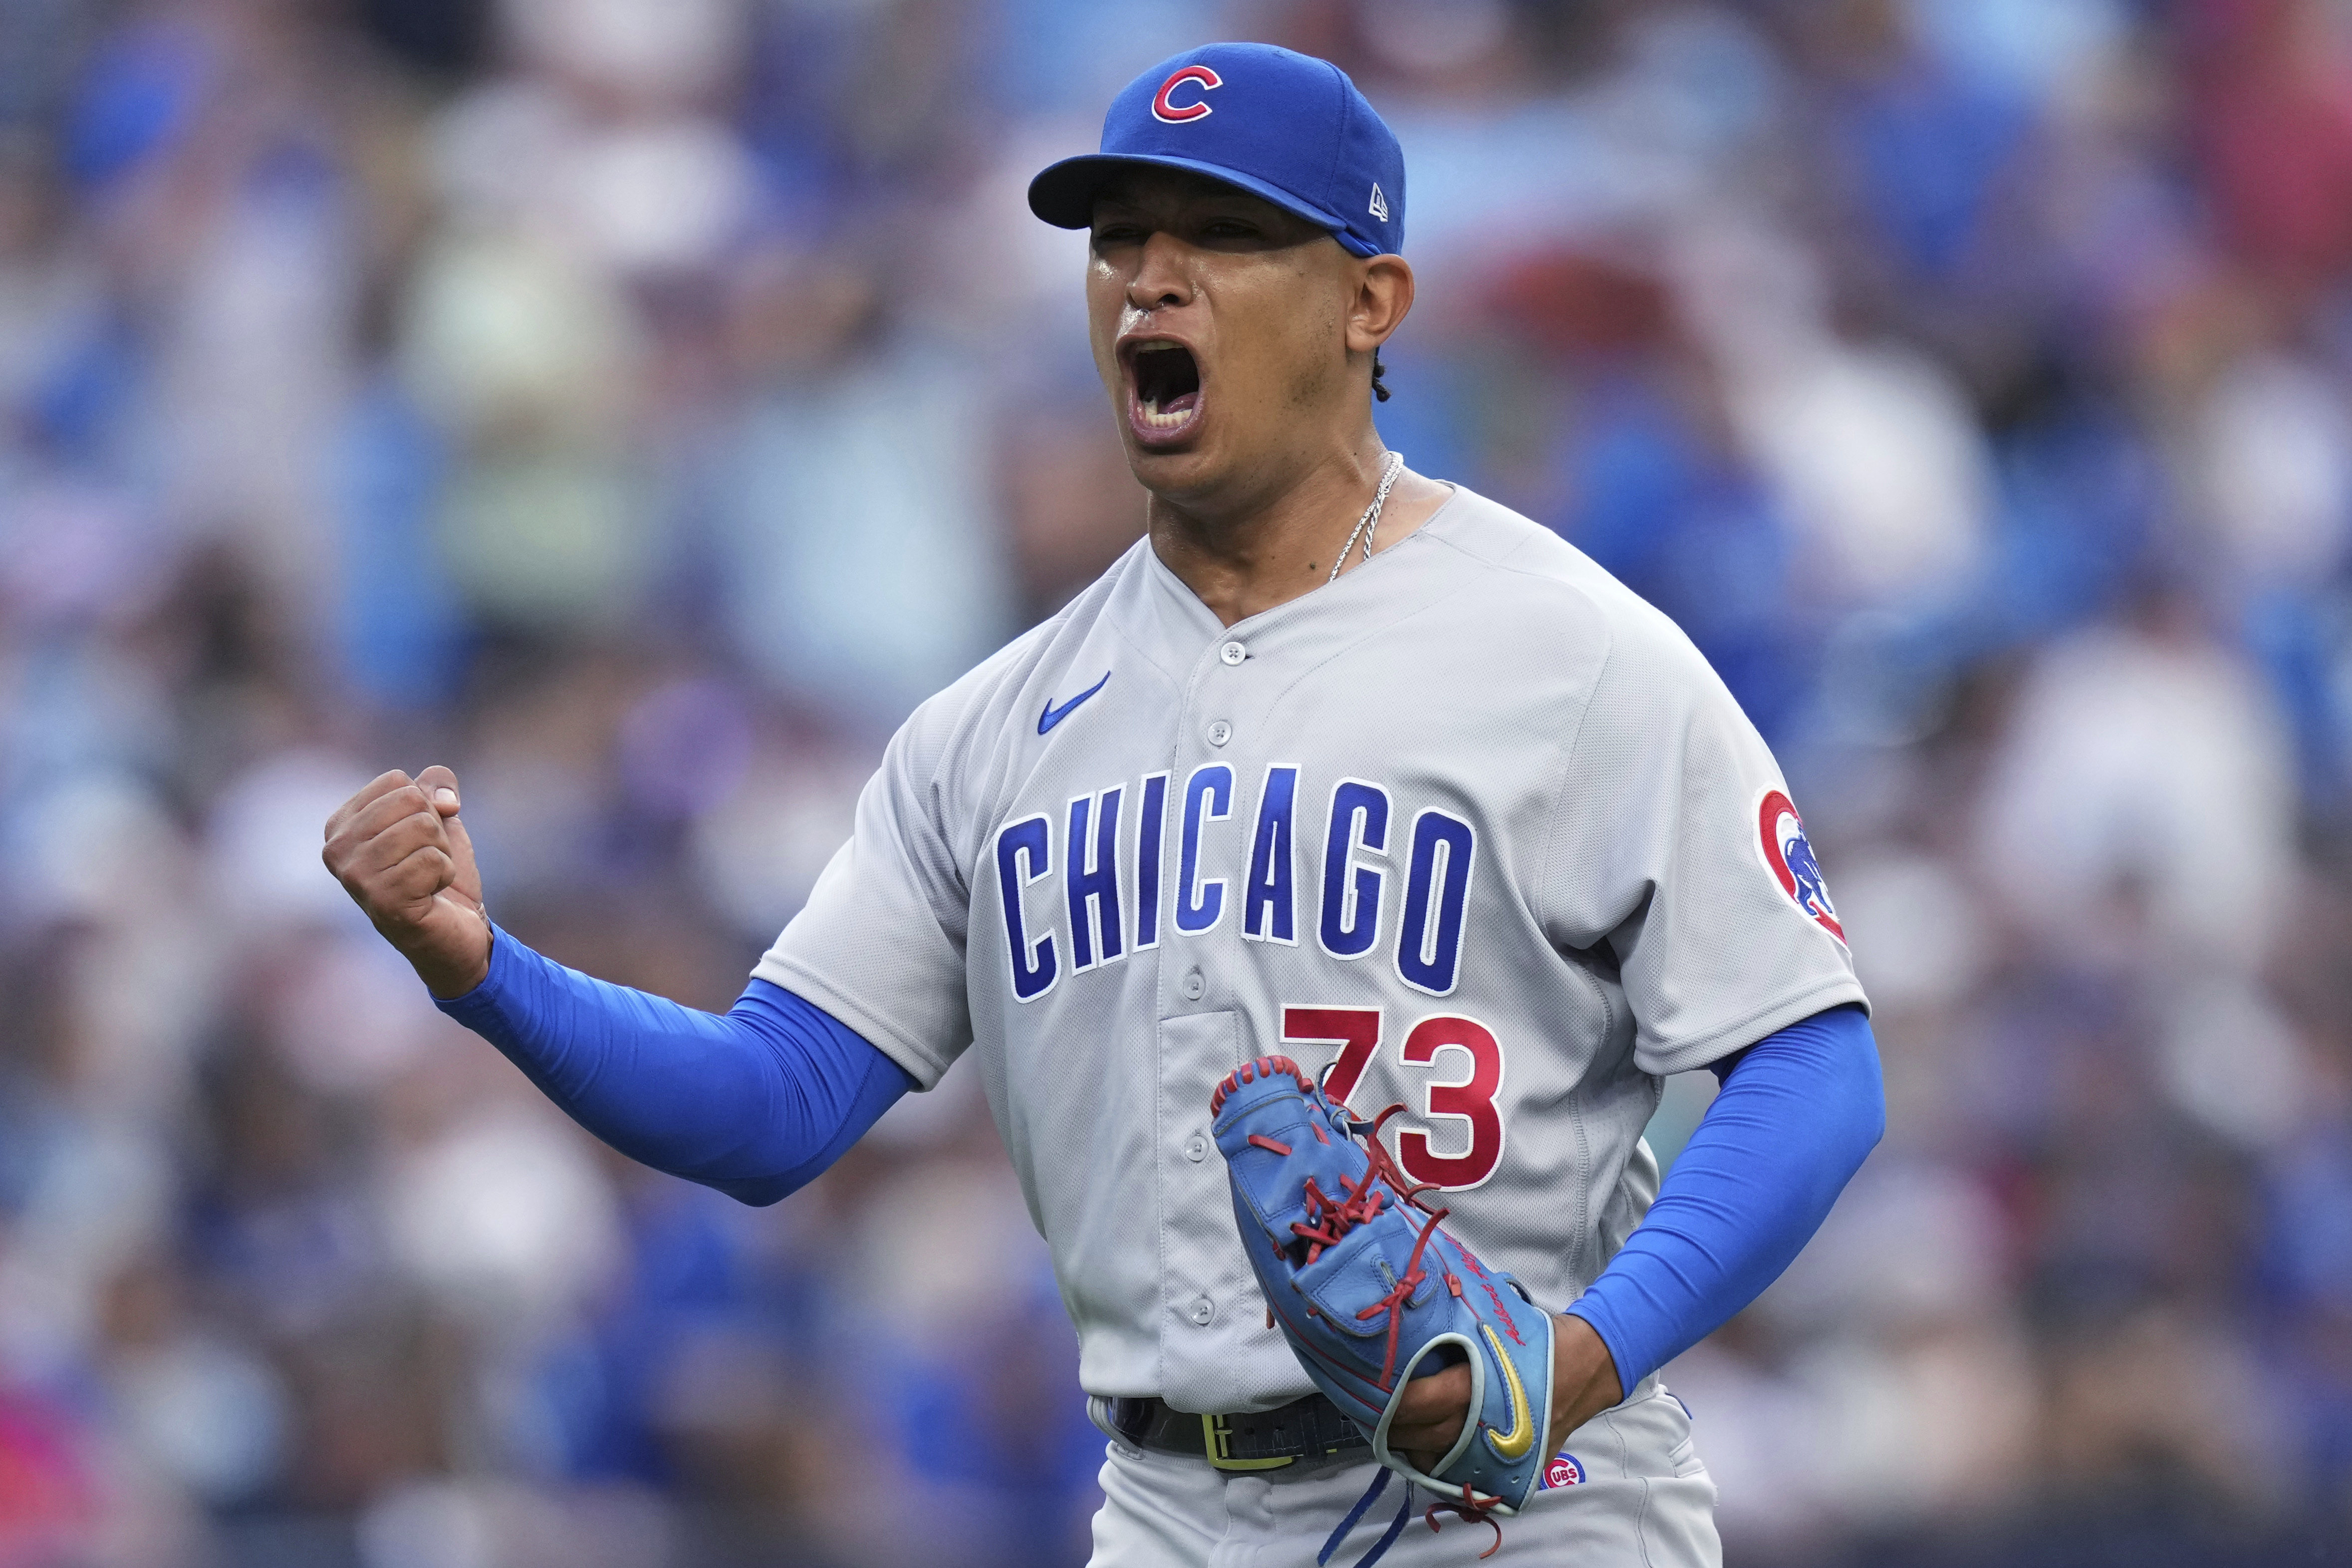 Bullpen fives 5 shutout innings as Astros top Cubs